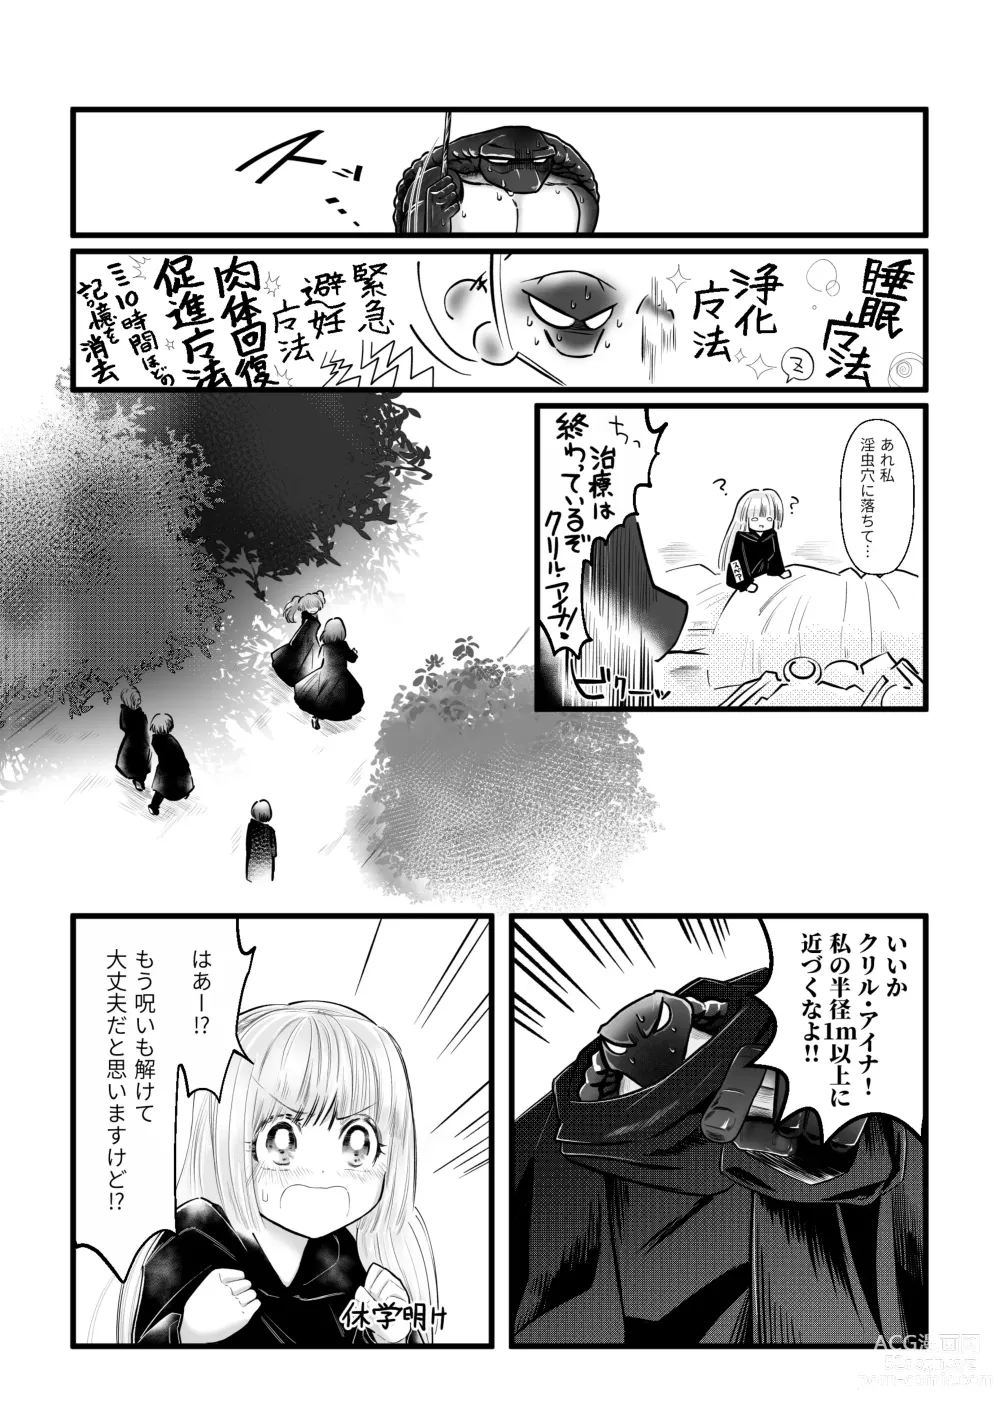 Page 31 of doujinshi Dakatsu no Gotoku Osoreteita Sensei to Kazukazu no Ero Happening ni Mimawarete Kindan no Kankaku Shadan Otoshiana Kouishou Chiryou